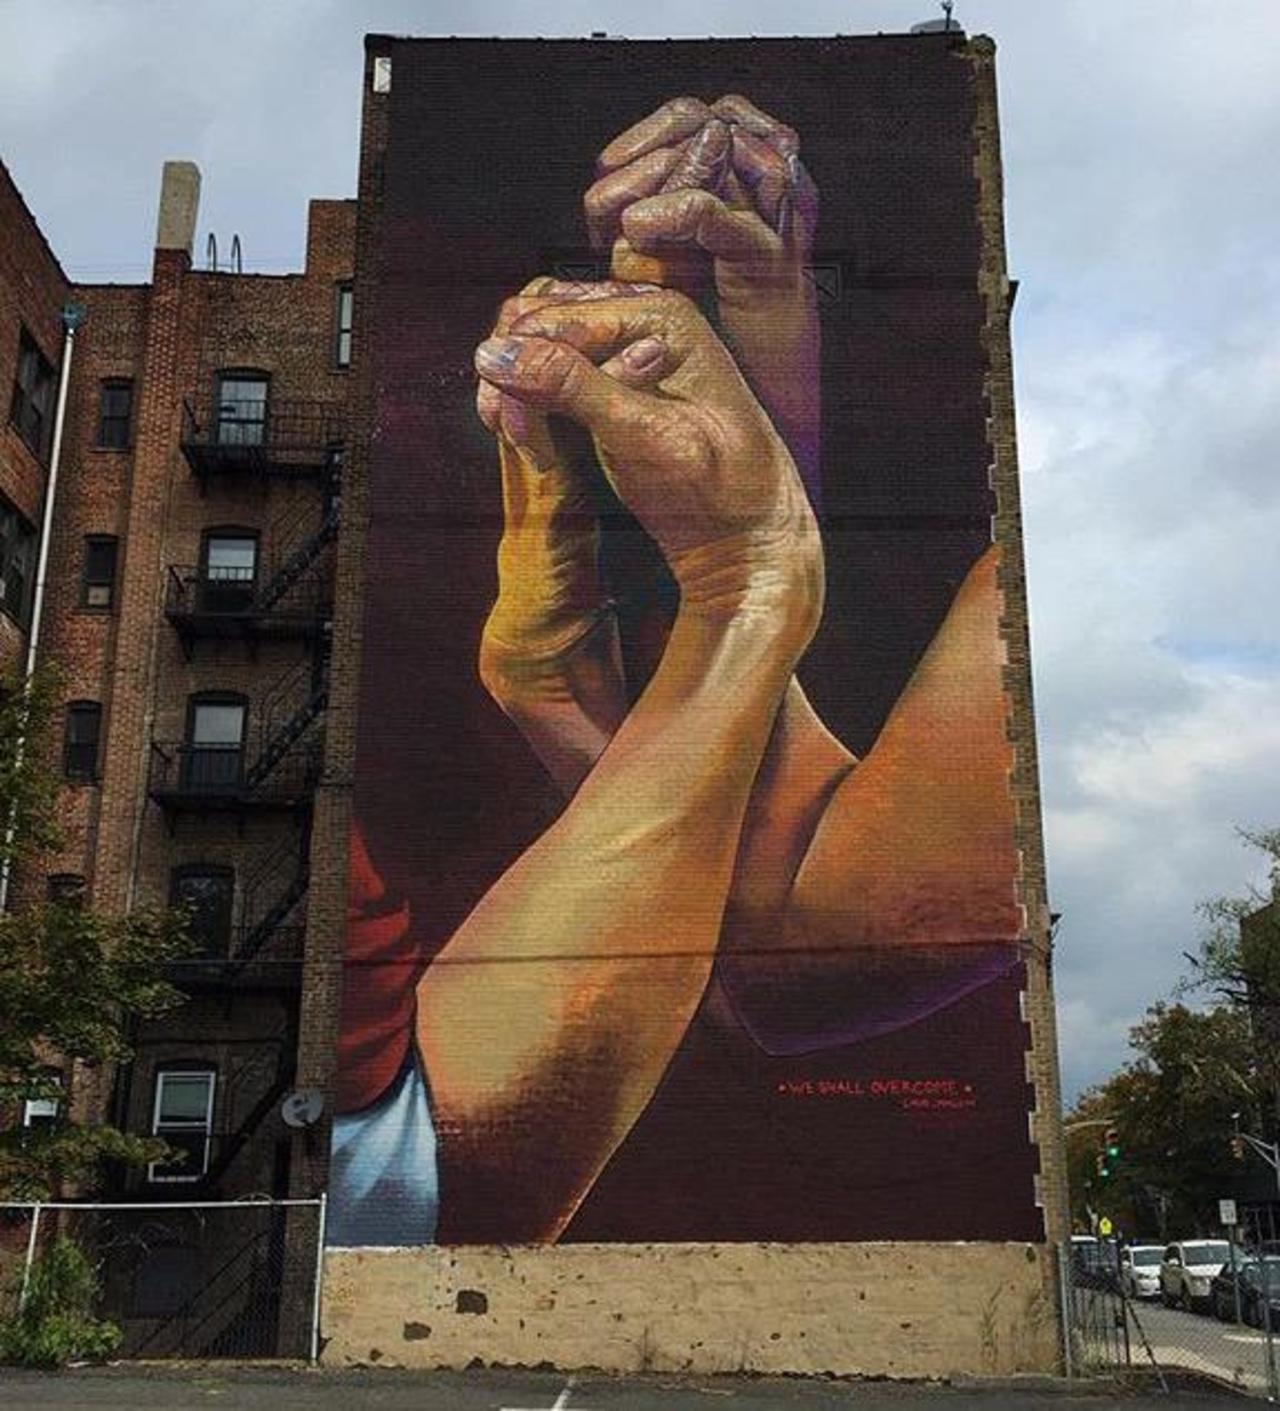 New Street Art by CaseMaclaim in Jersey City for the TheBKcollective 

#art #graffiti #mural #streetart http://t.co/oMxLSz2bkh